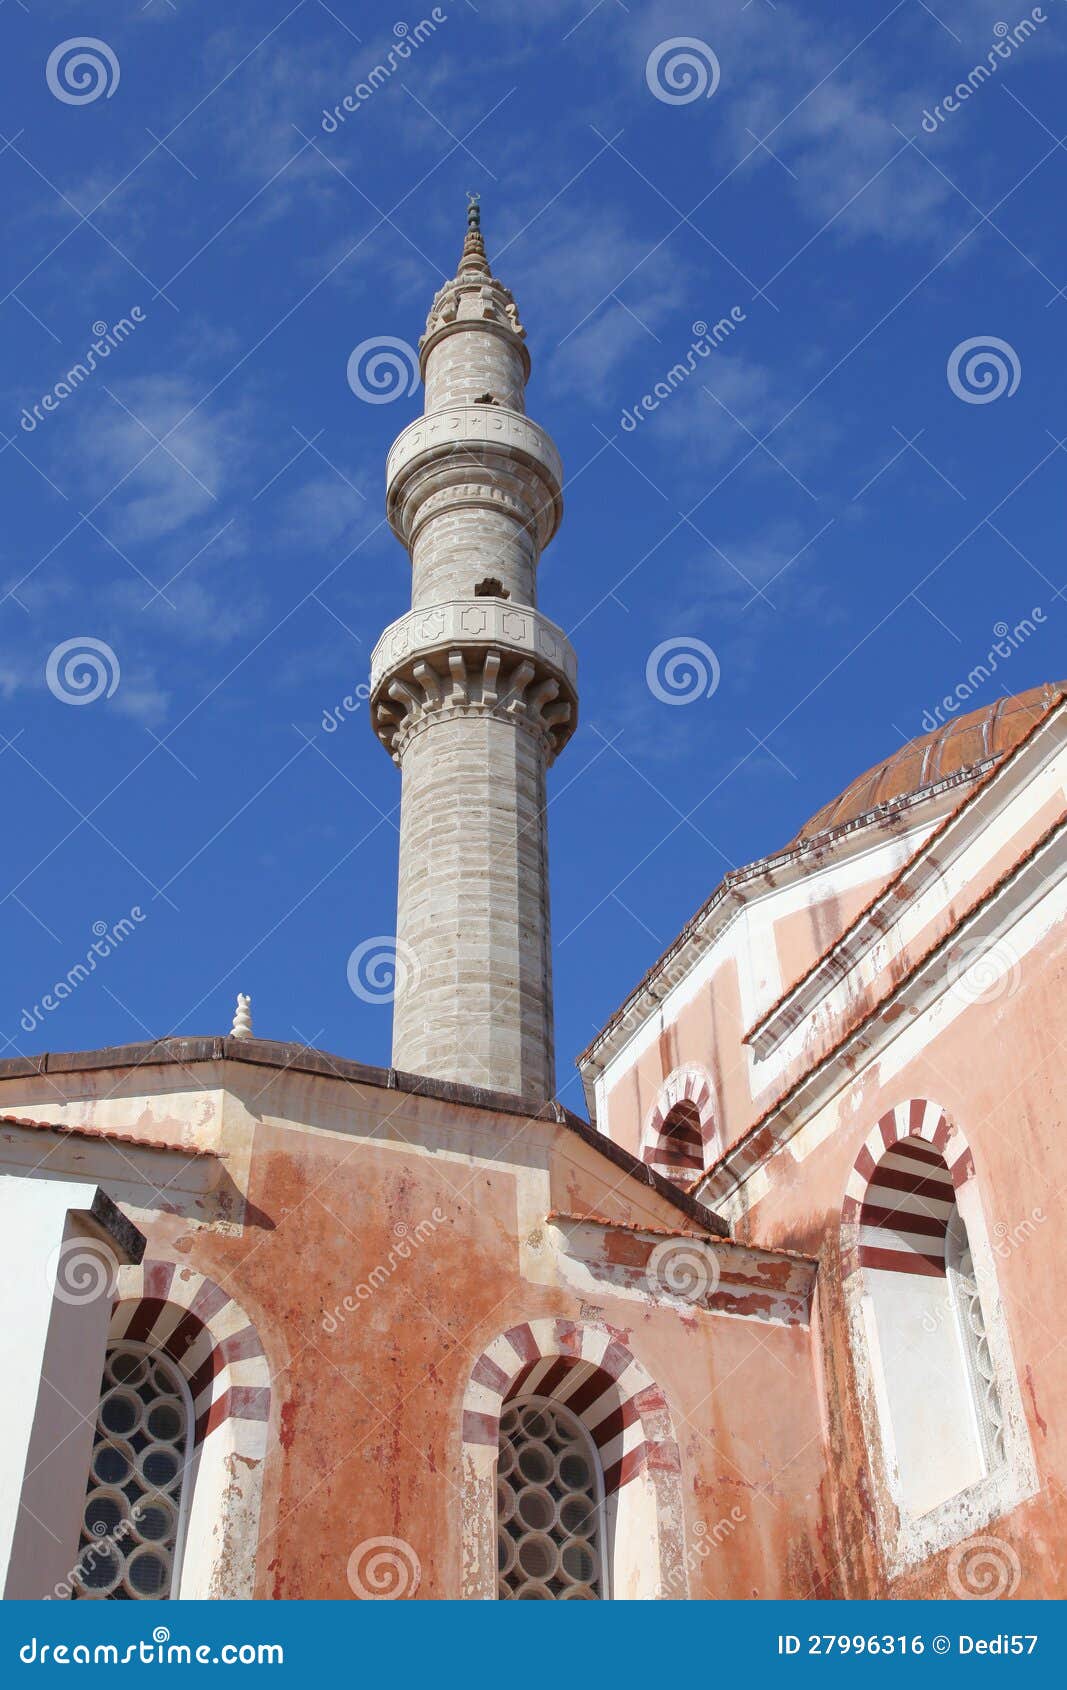 the minaret of suleiman mosque, rhodes